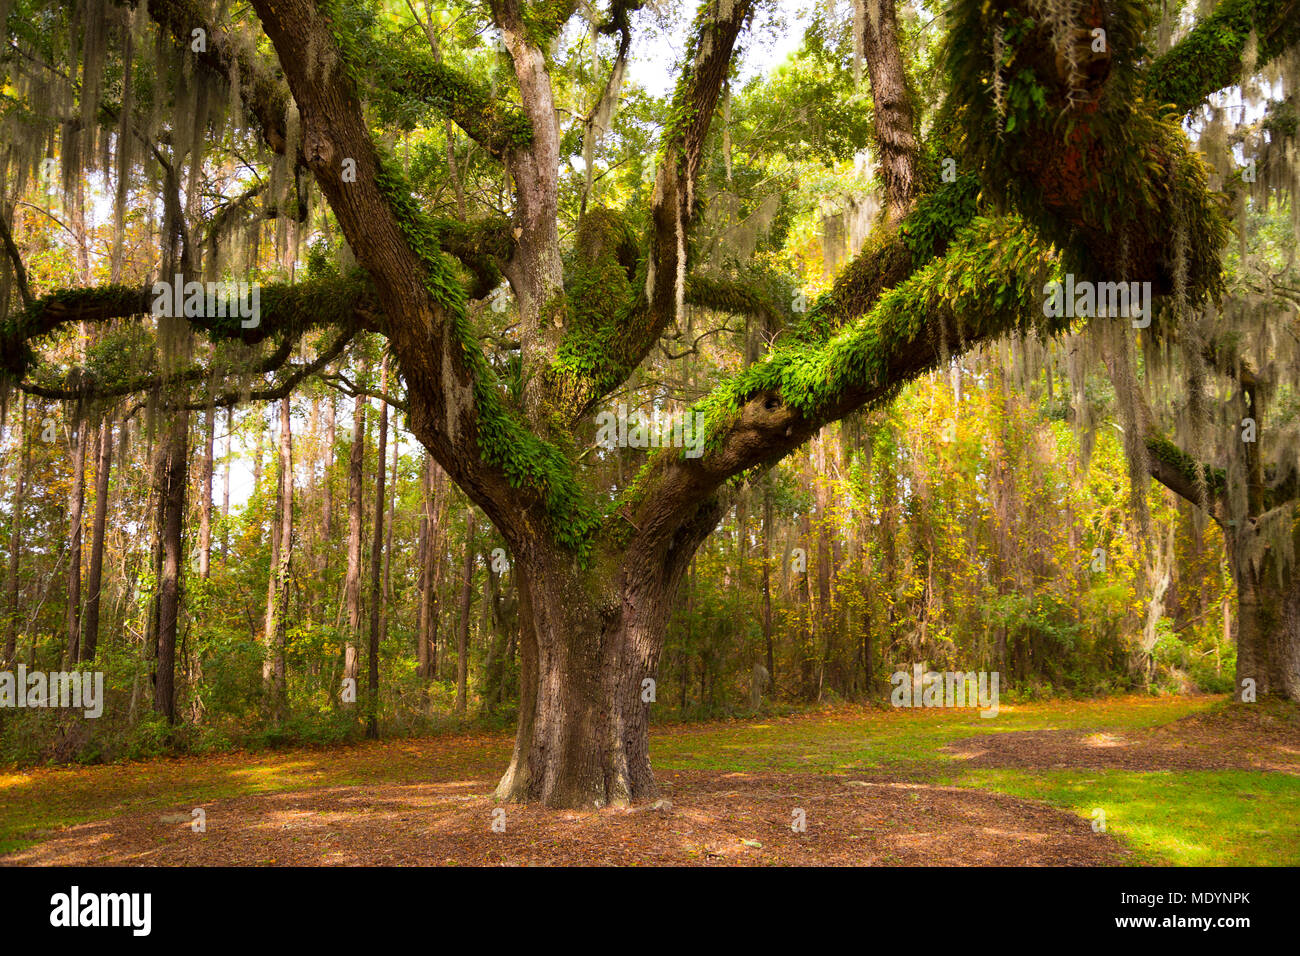 Arbre de chêne avec de la mousse espagnole sur une plantation près de Charleston, Caroline du Sud Banque D'Images